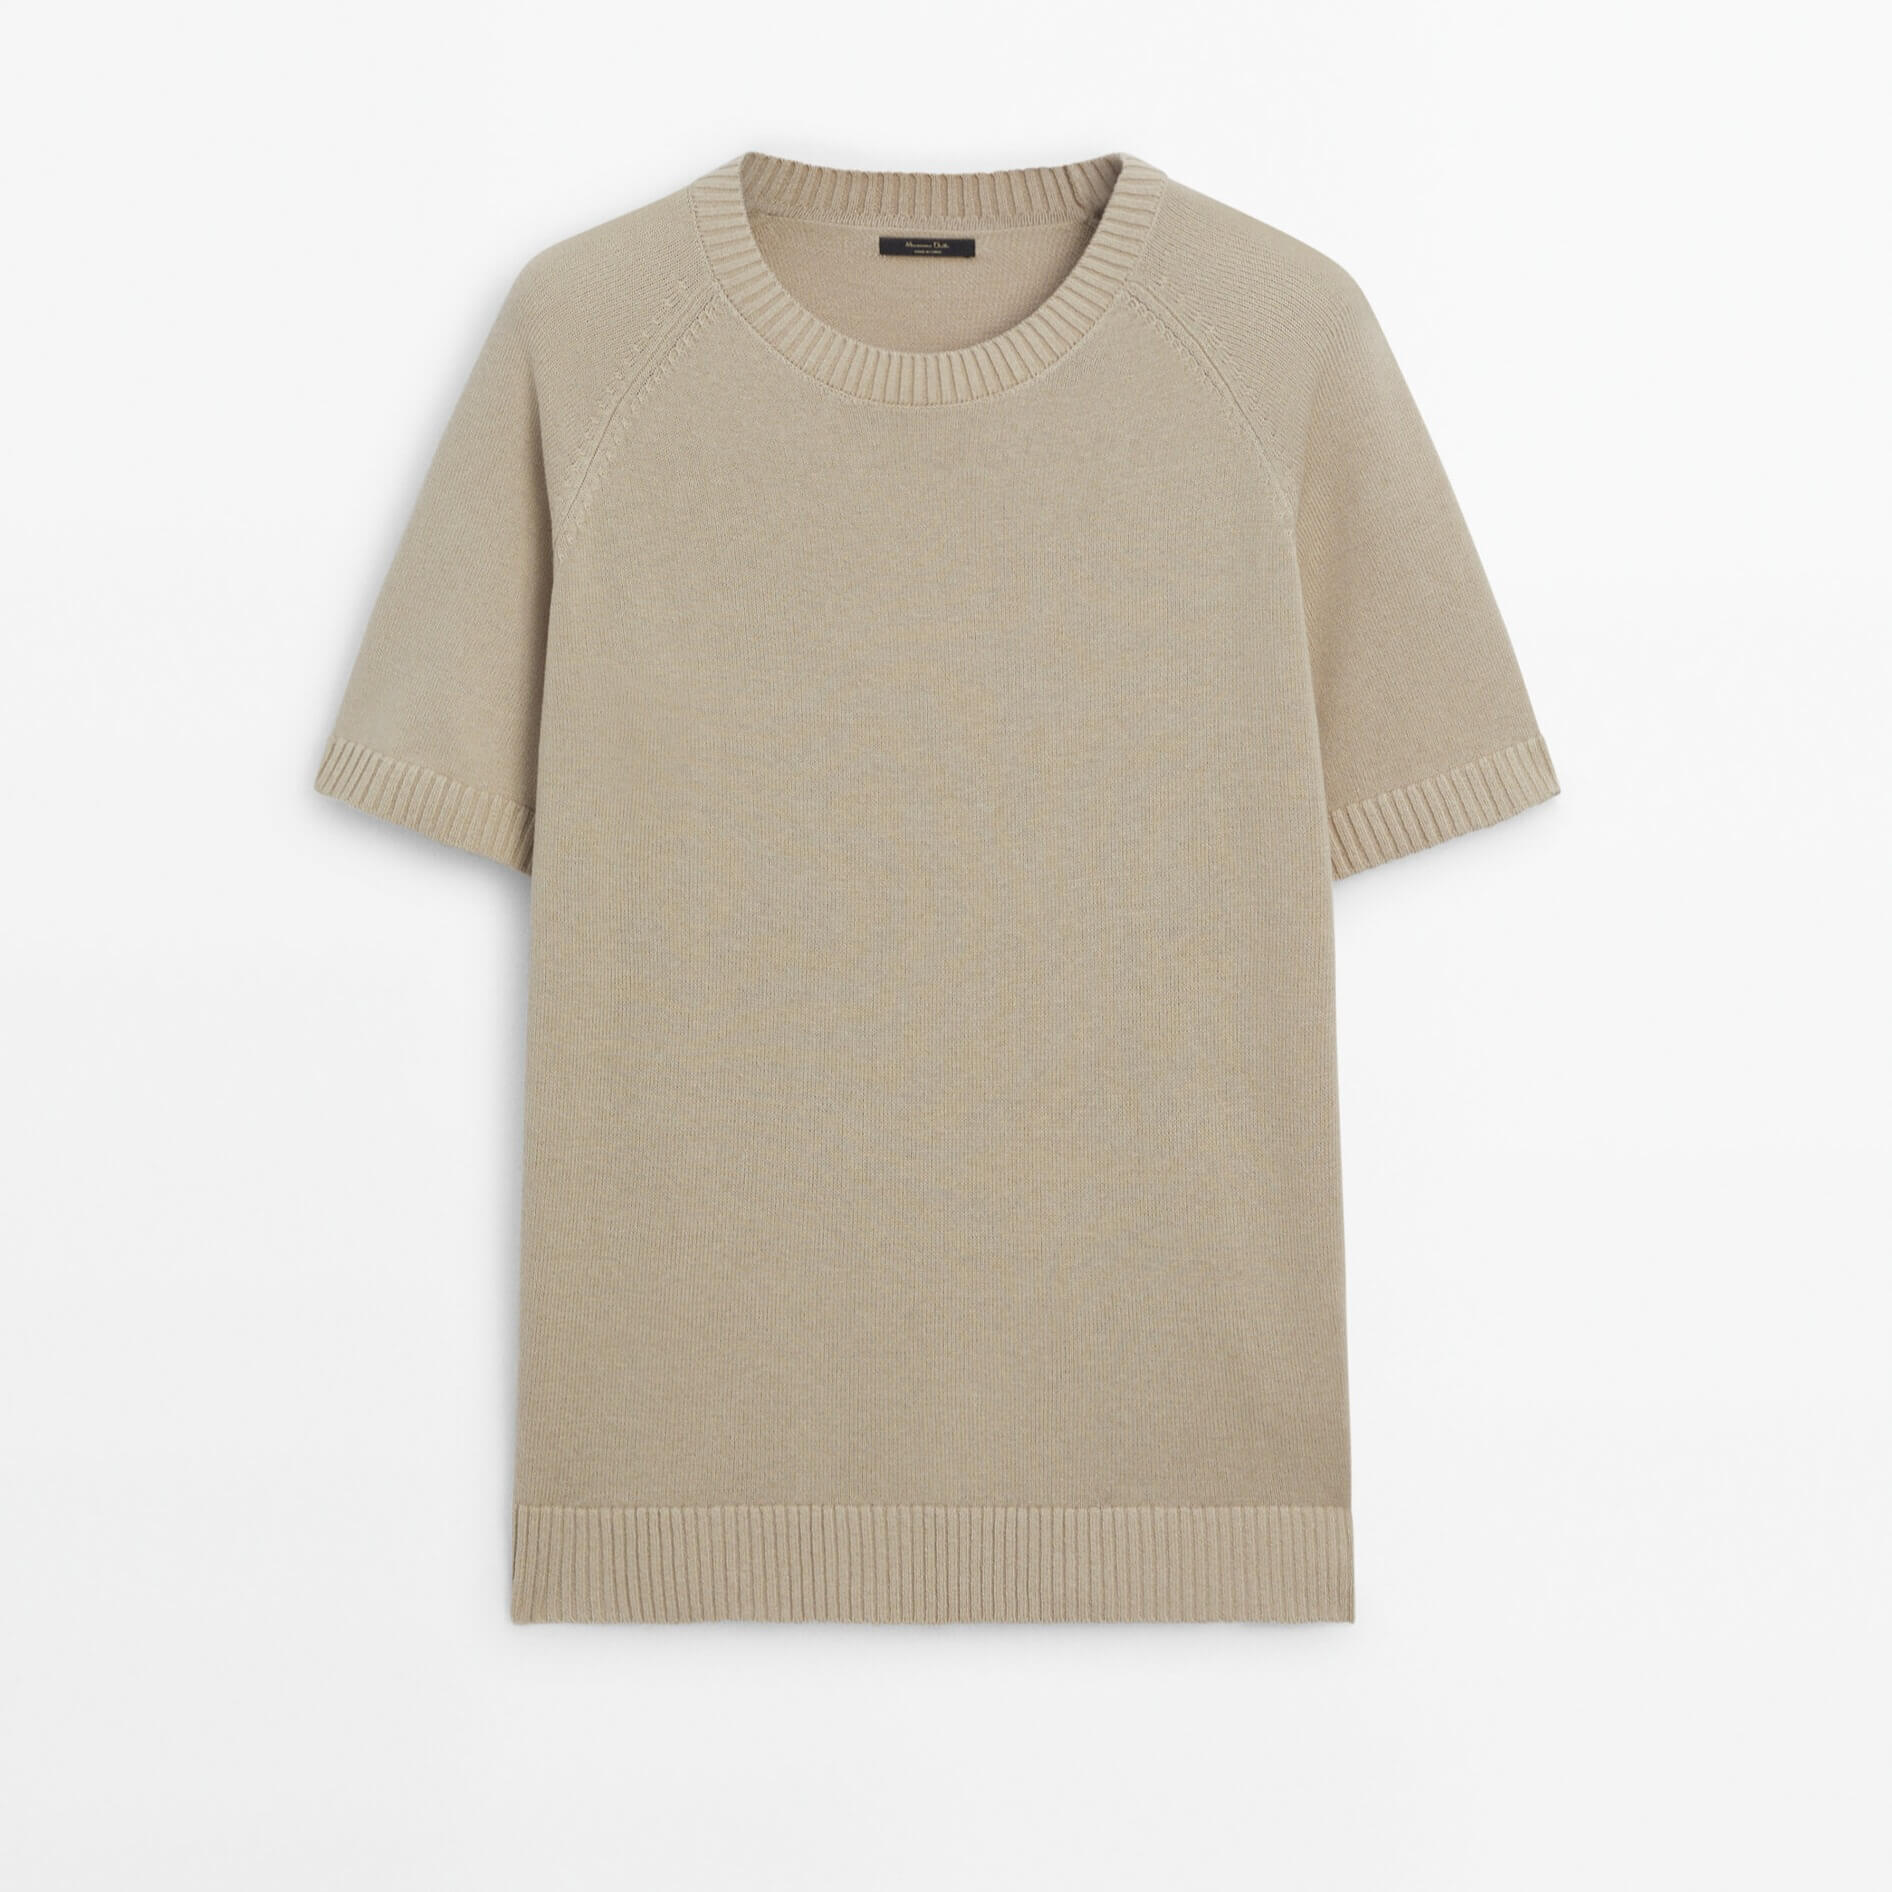 Футболка Massimo Dutti Short Sleeve Knit With Cotton, бежевый футболка с коротким рукавом новинка лета 2021 вязаная корейская свободная приталенная рубашка с круглым вырезом джокер пуловер куртка для